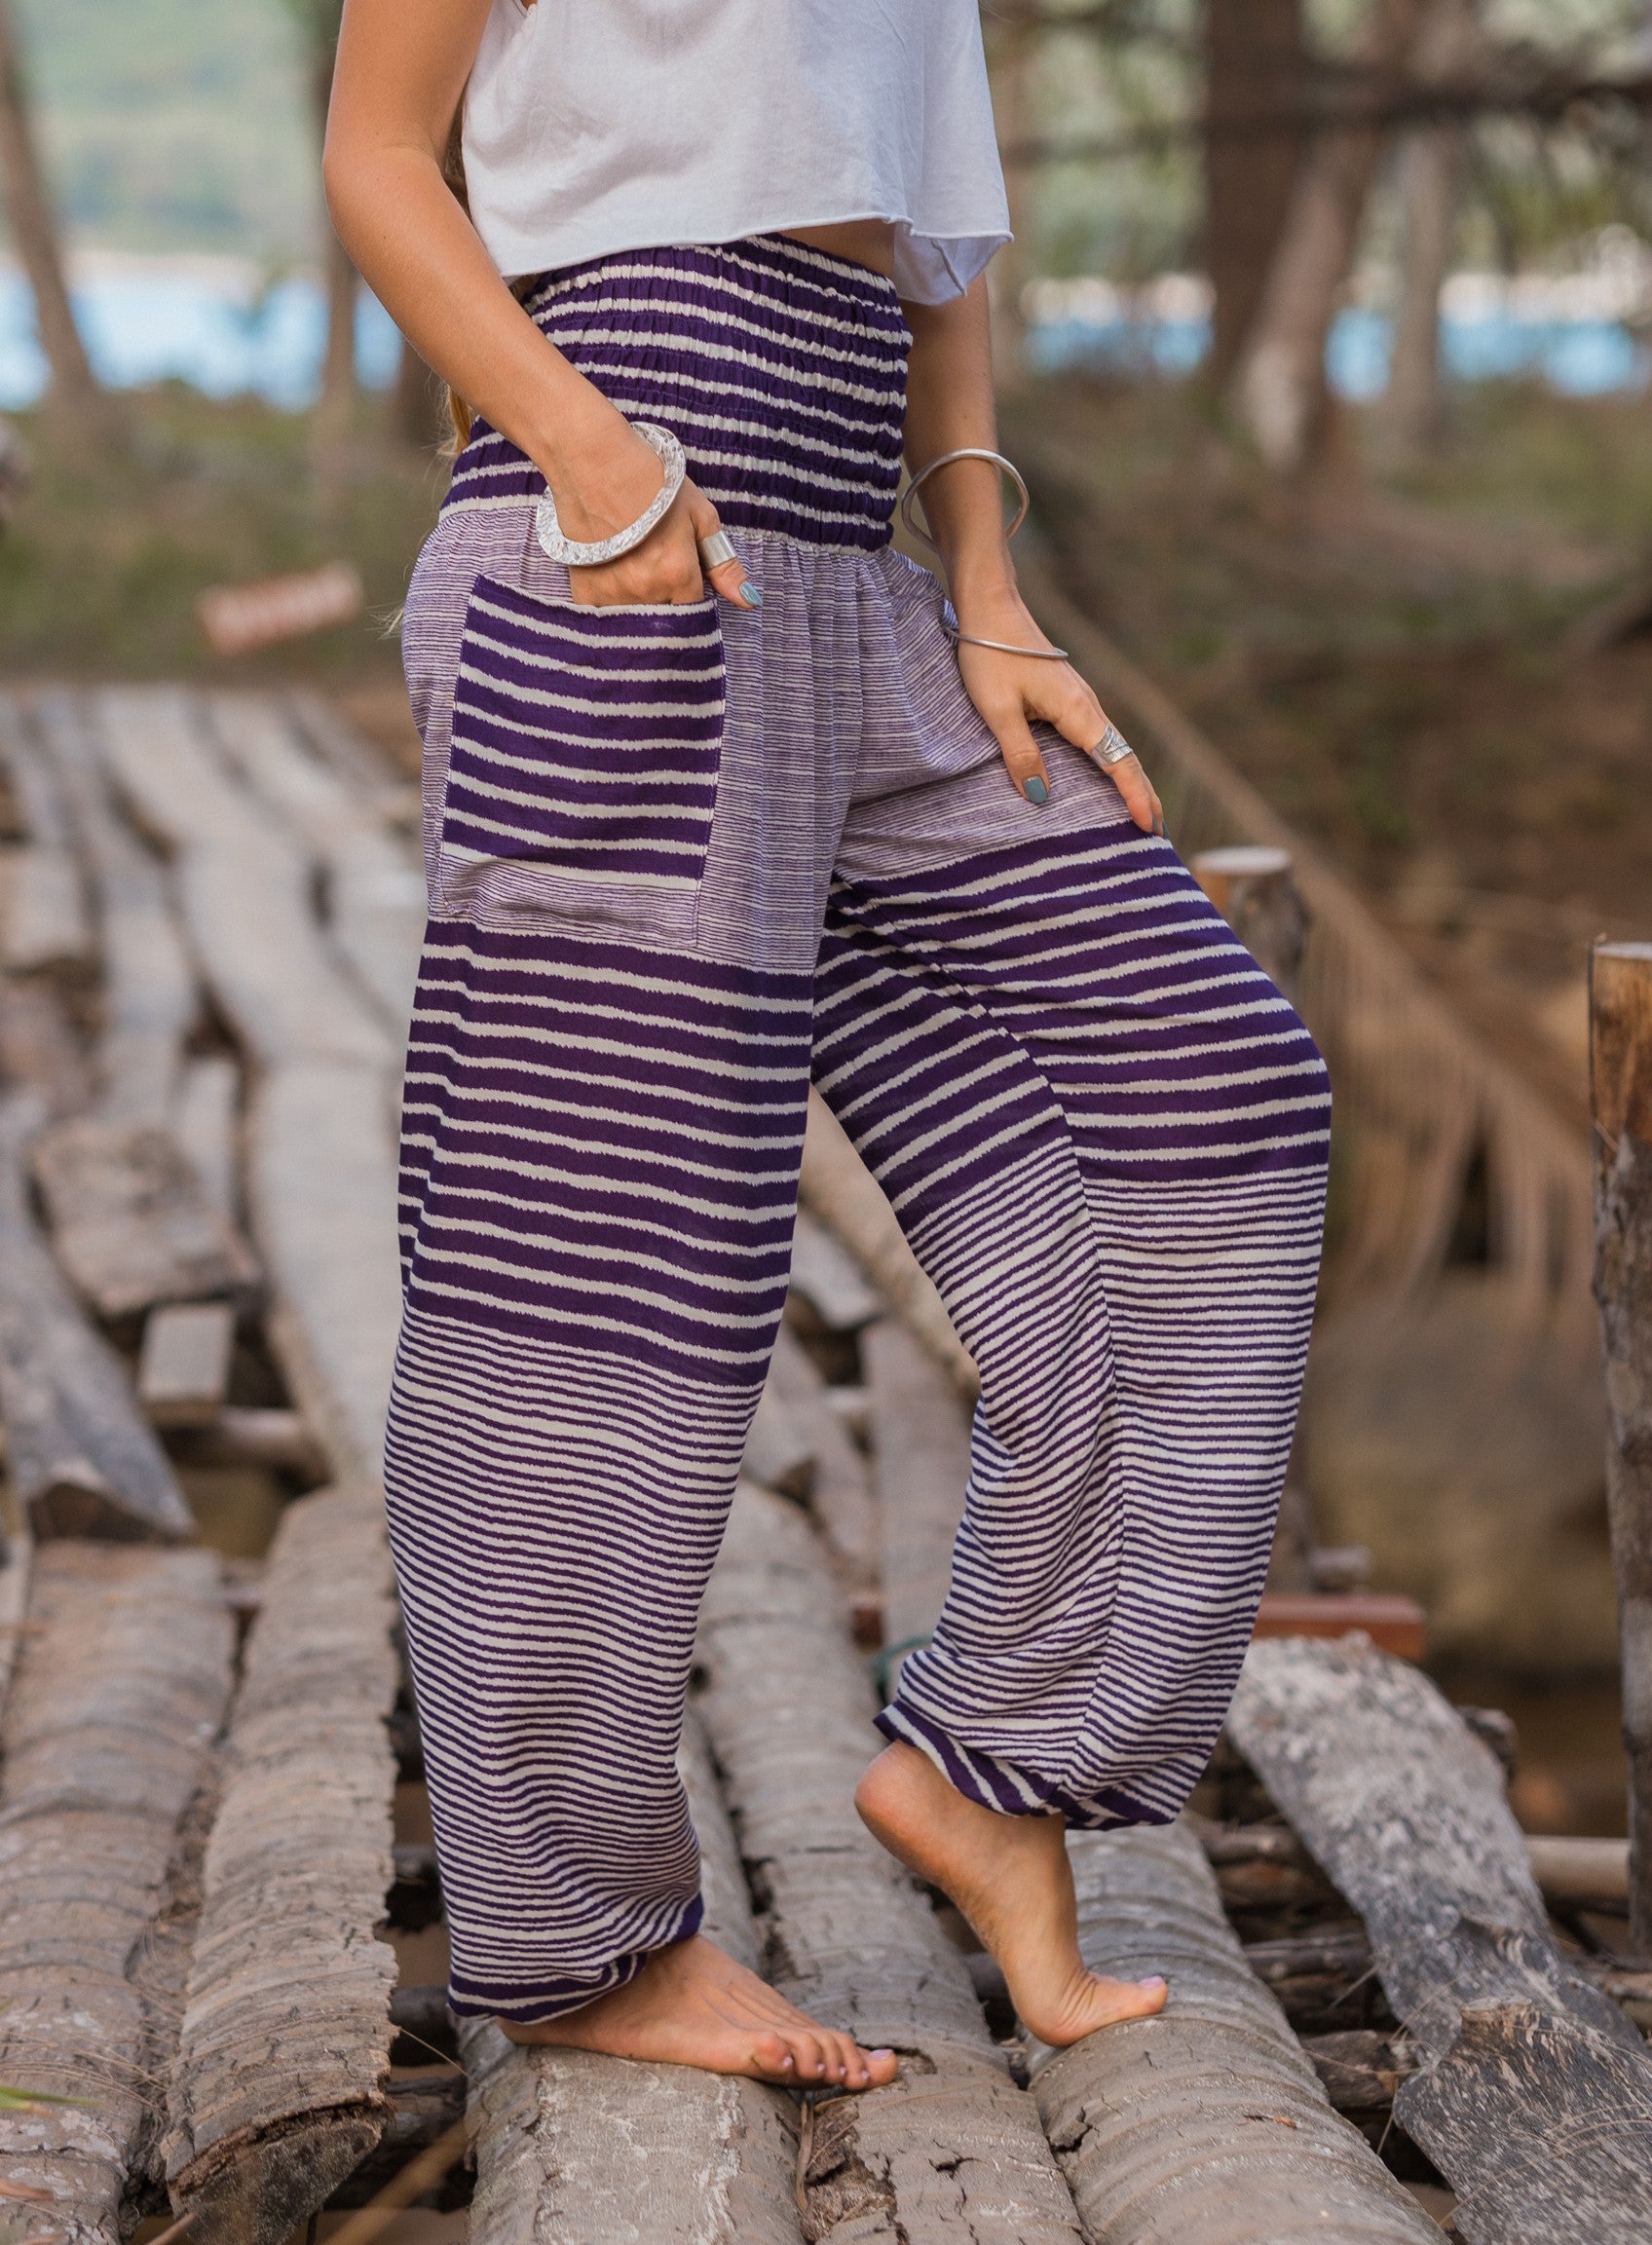 High Crotch Harem Pants - Striped - Purple & White